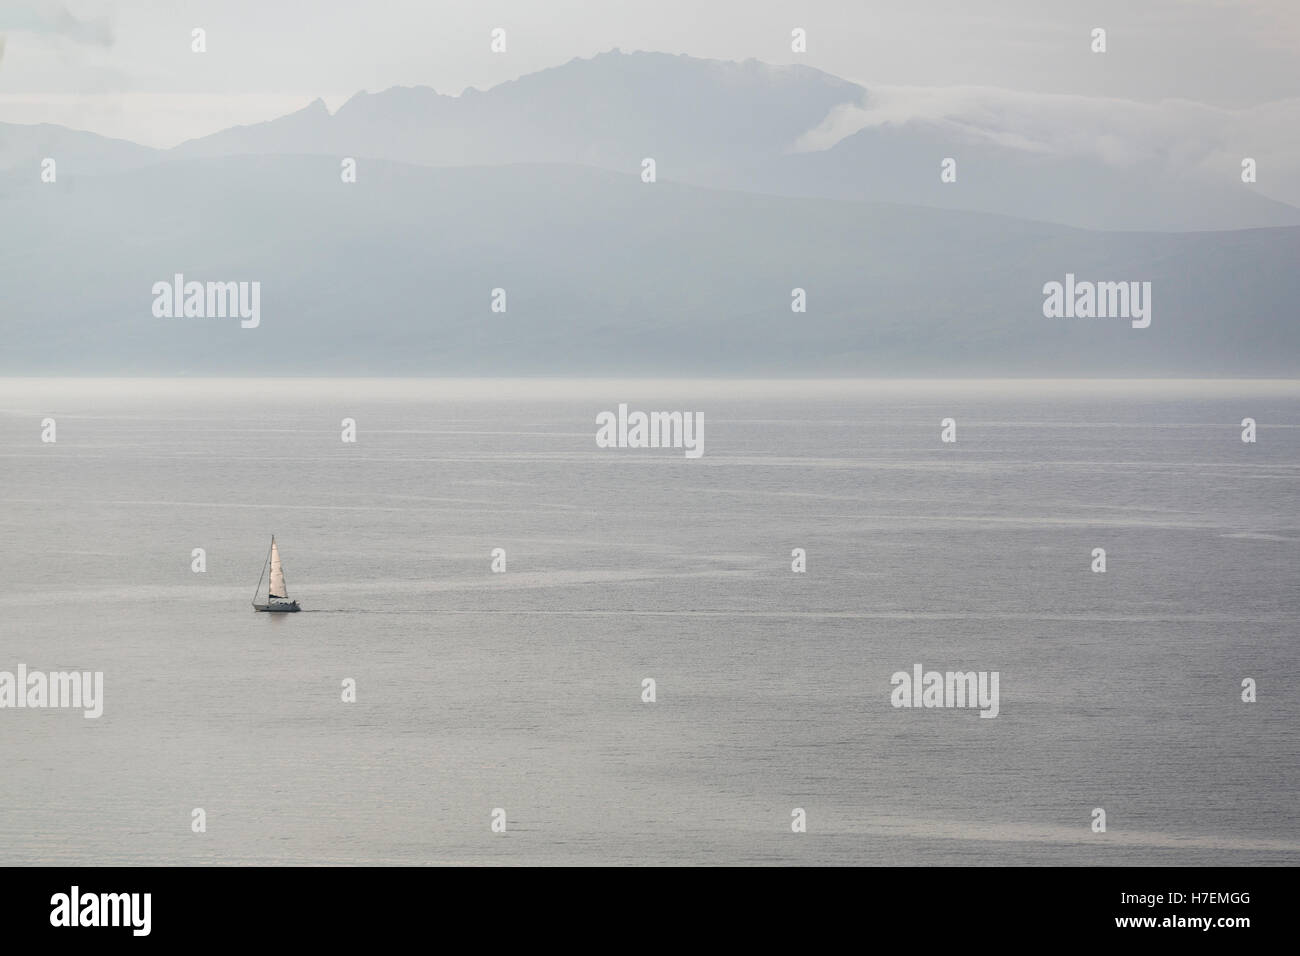 Vista di lone in barca a vela in mare passando l'isola scozzese Isle of Arran in Argyll & Bute, Scozia modello di rilascio: No. Proprietà di rilascio: No. Foto Stock